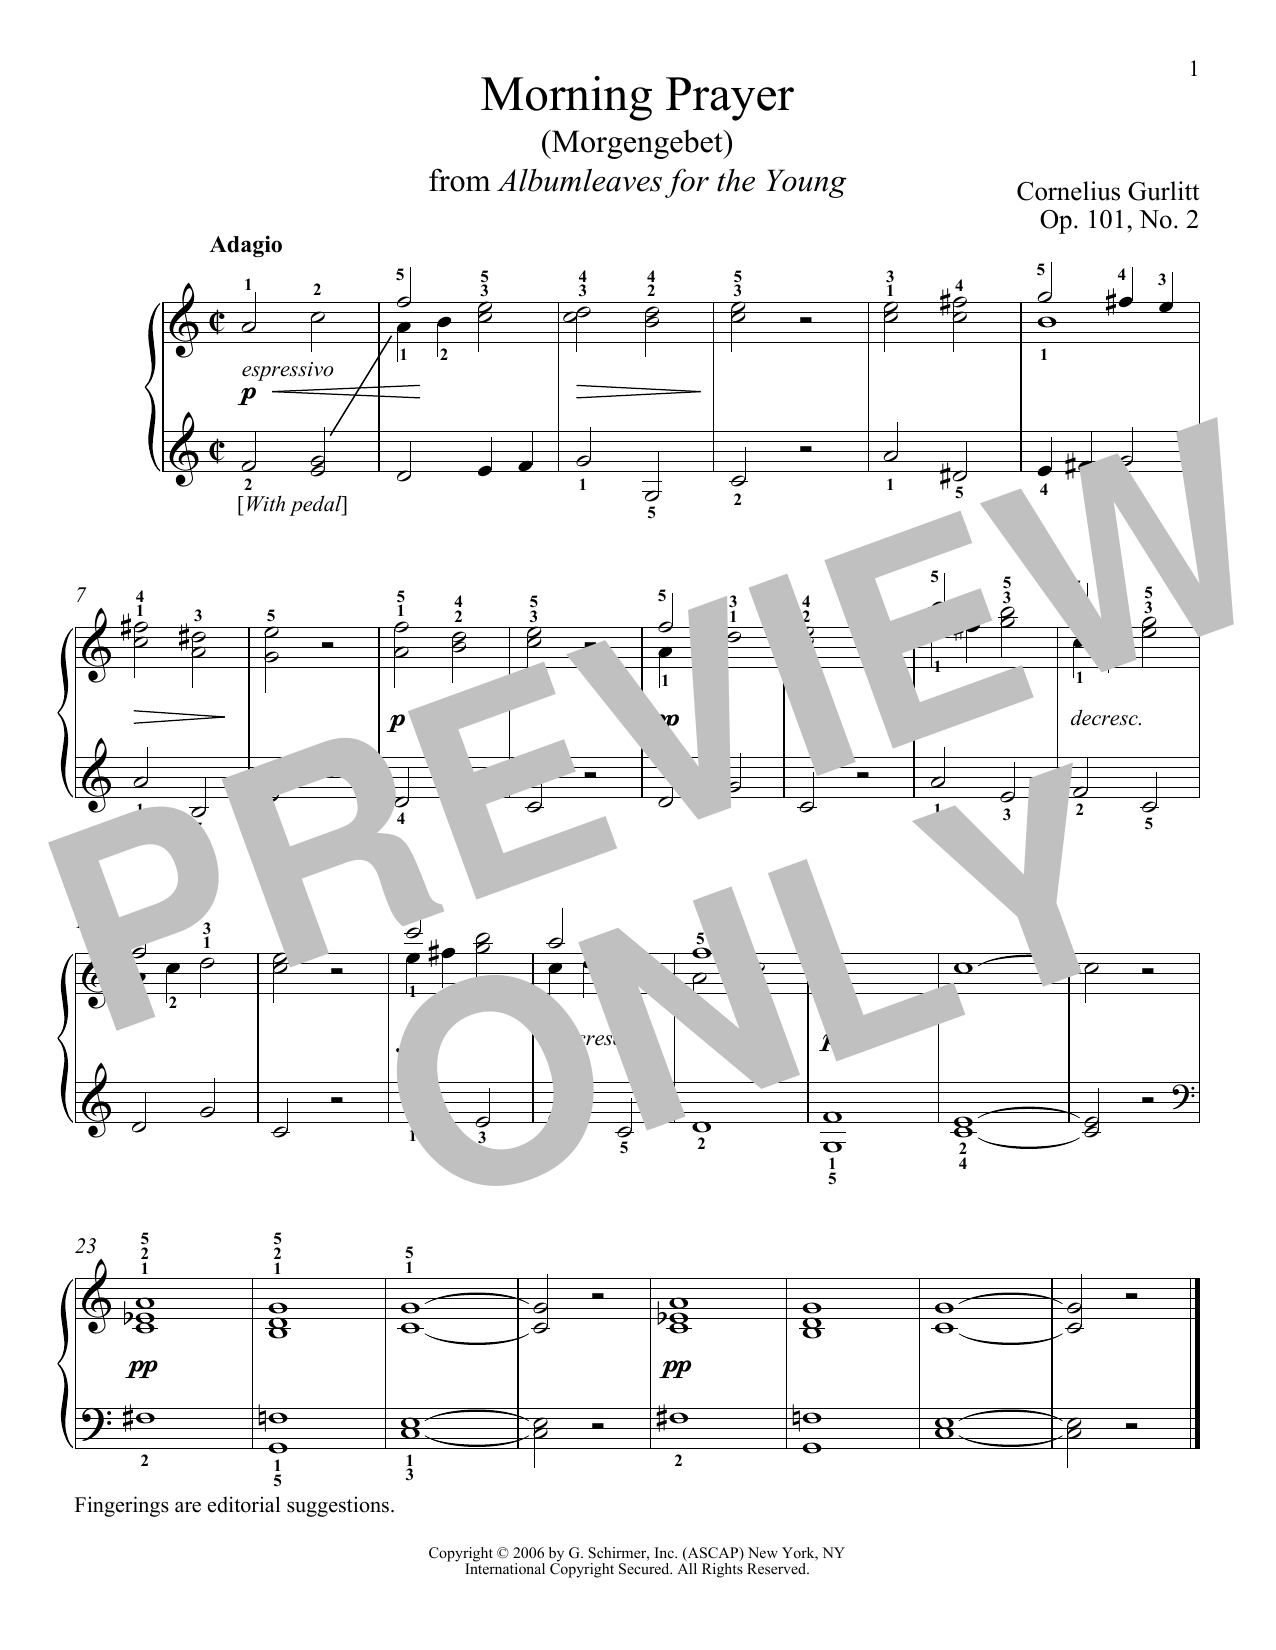 Download Cornelius Gurlitt Morning Prayer (Morgengebet), Op. 101, Sheet Music